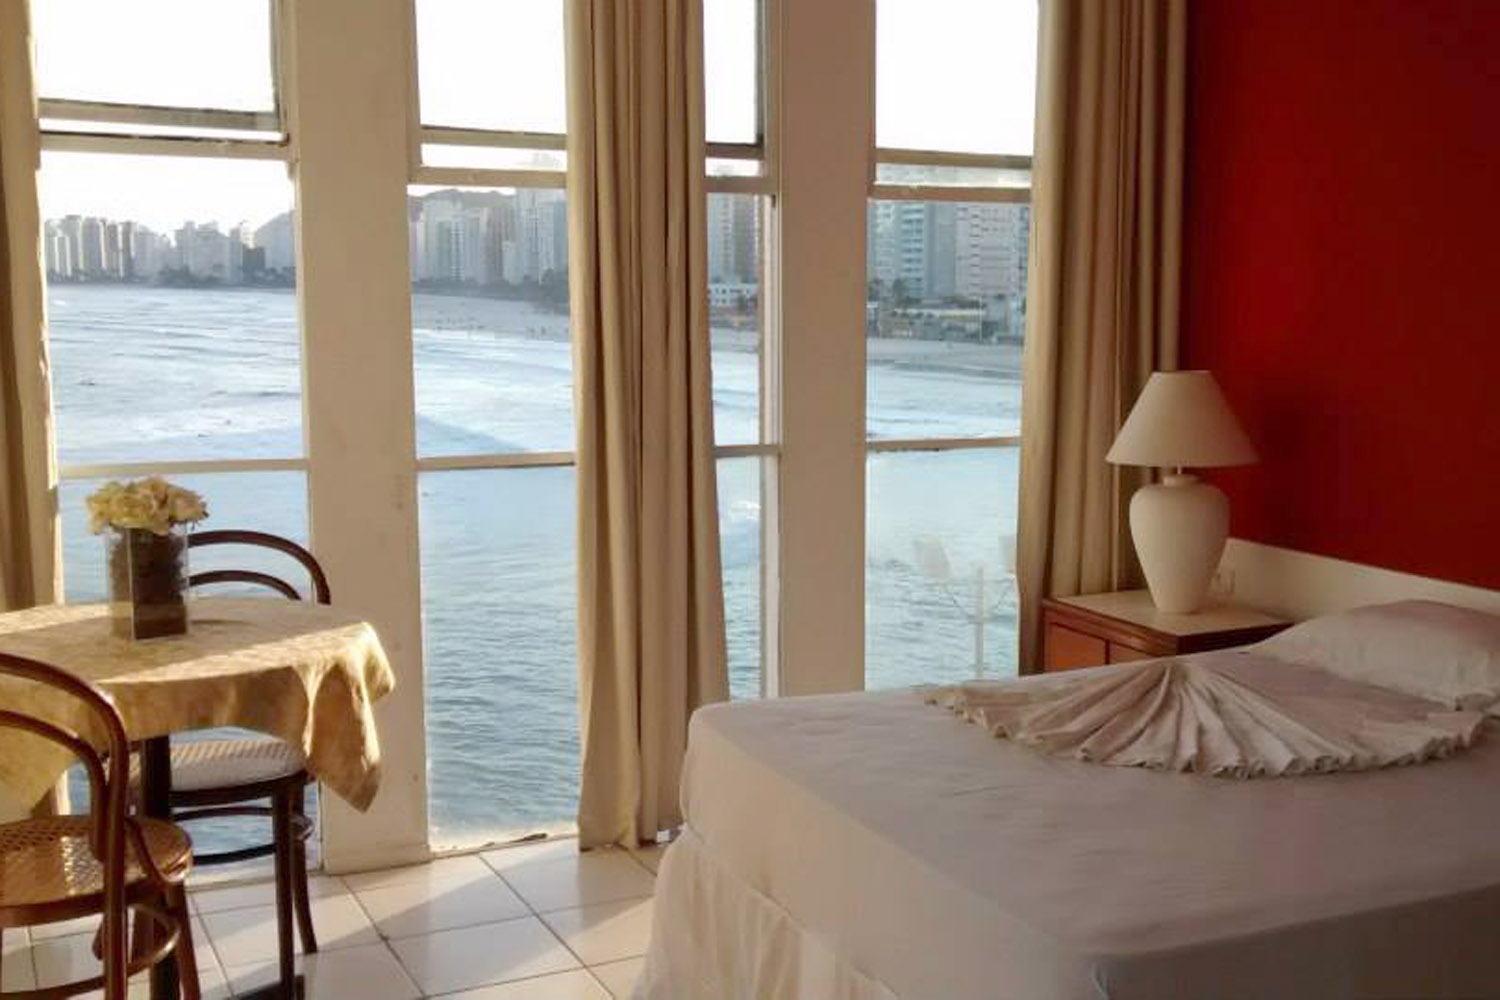 Sócio do Sindicato ganha estadia em hotel com vista para o mar no Guarujá